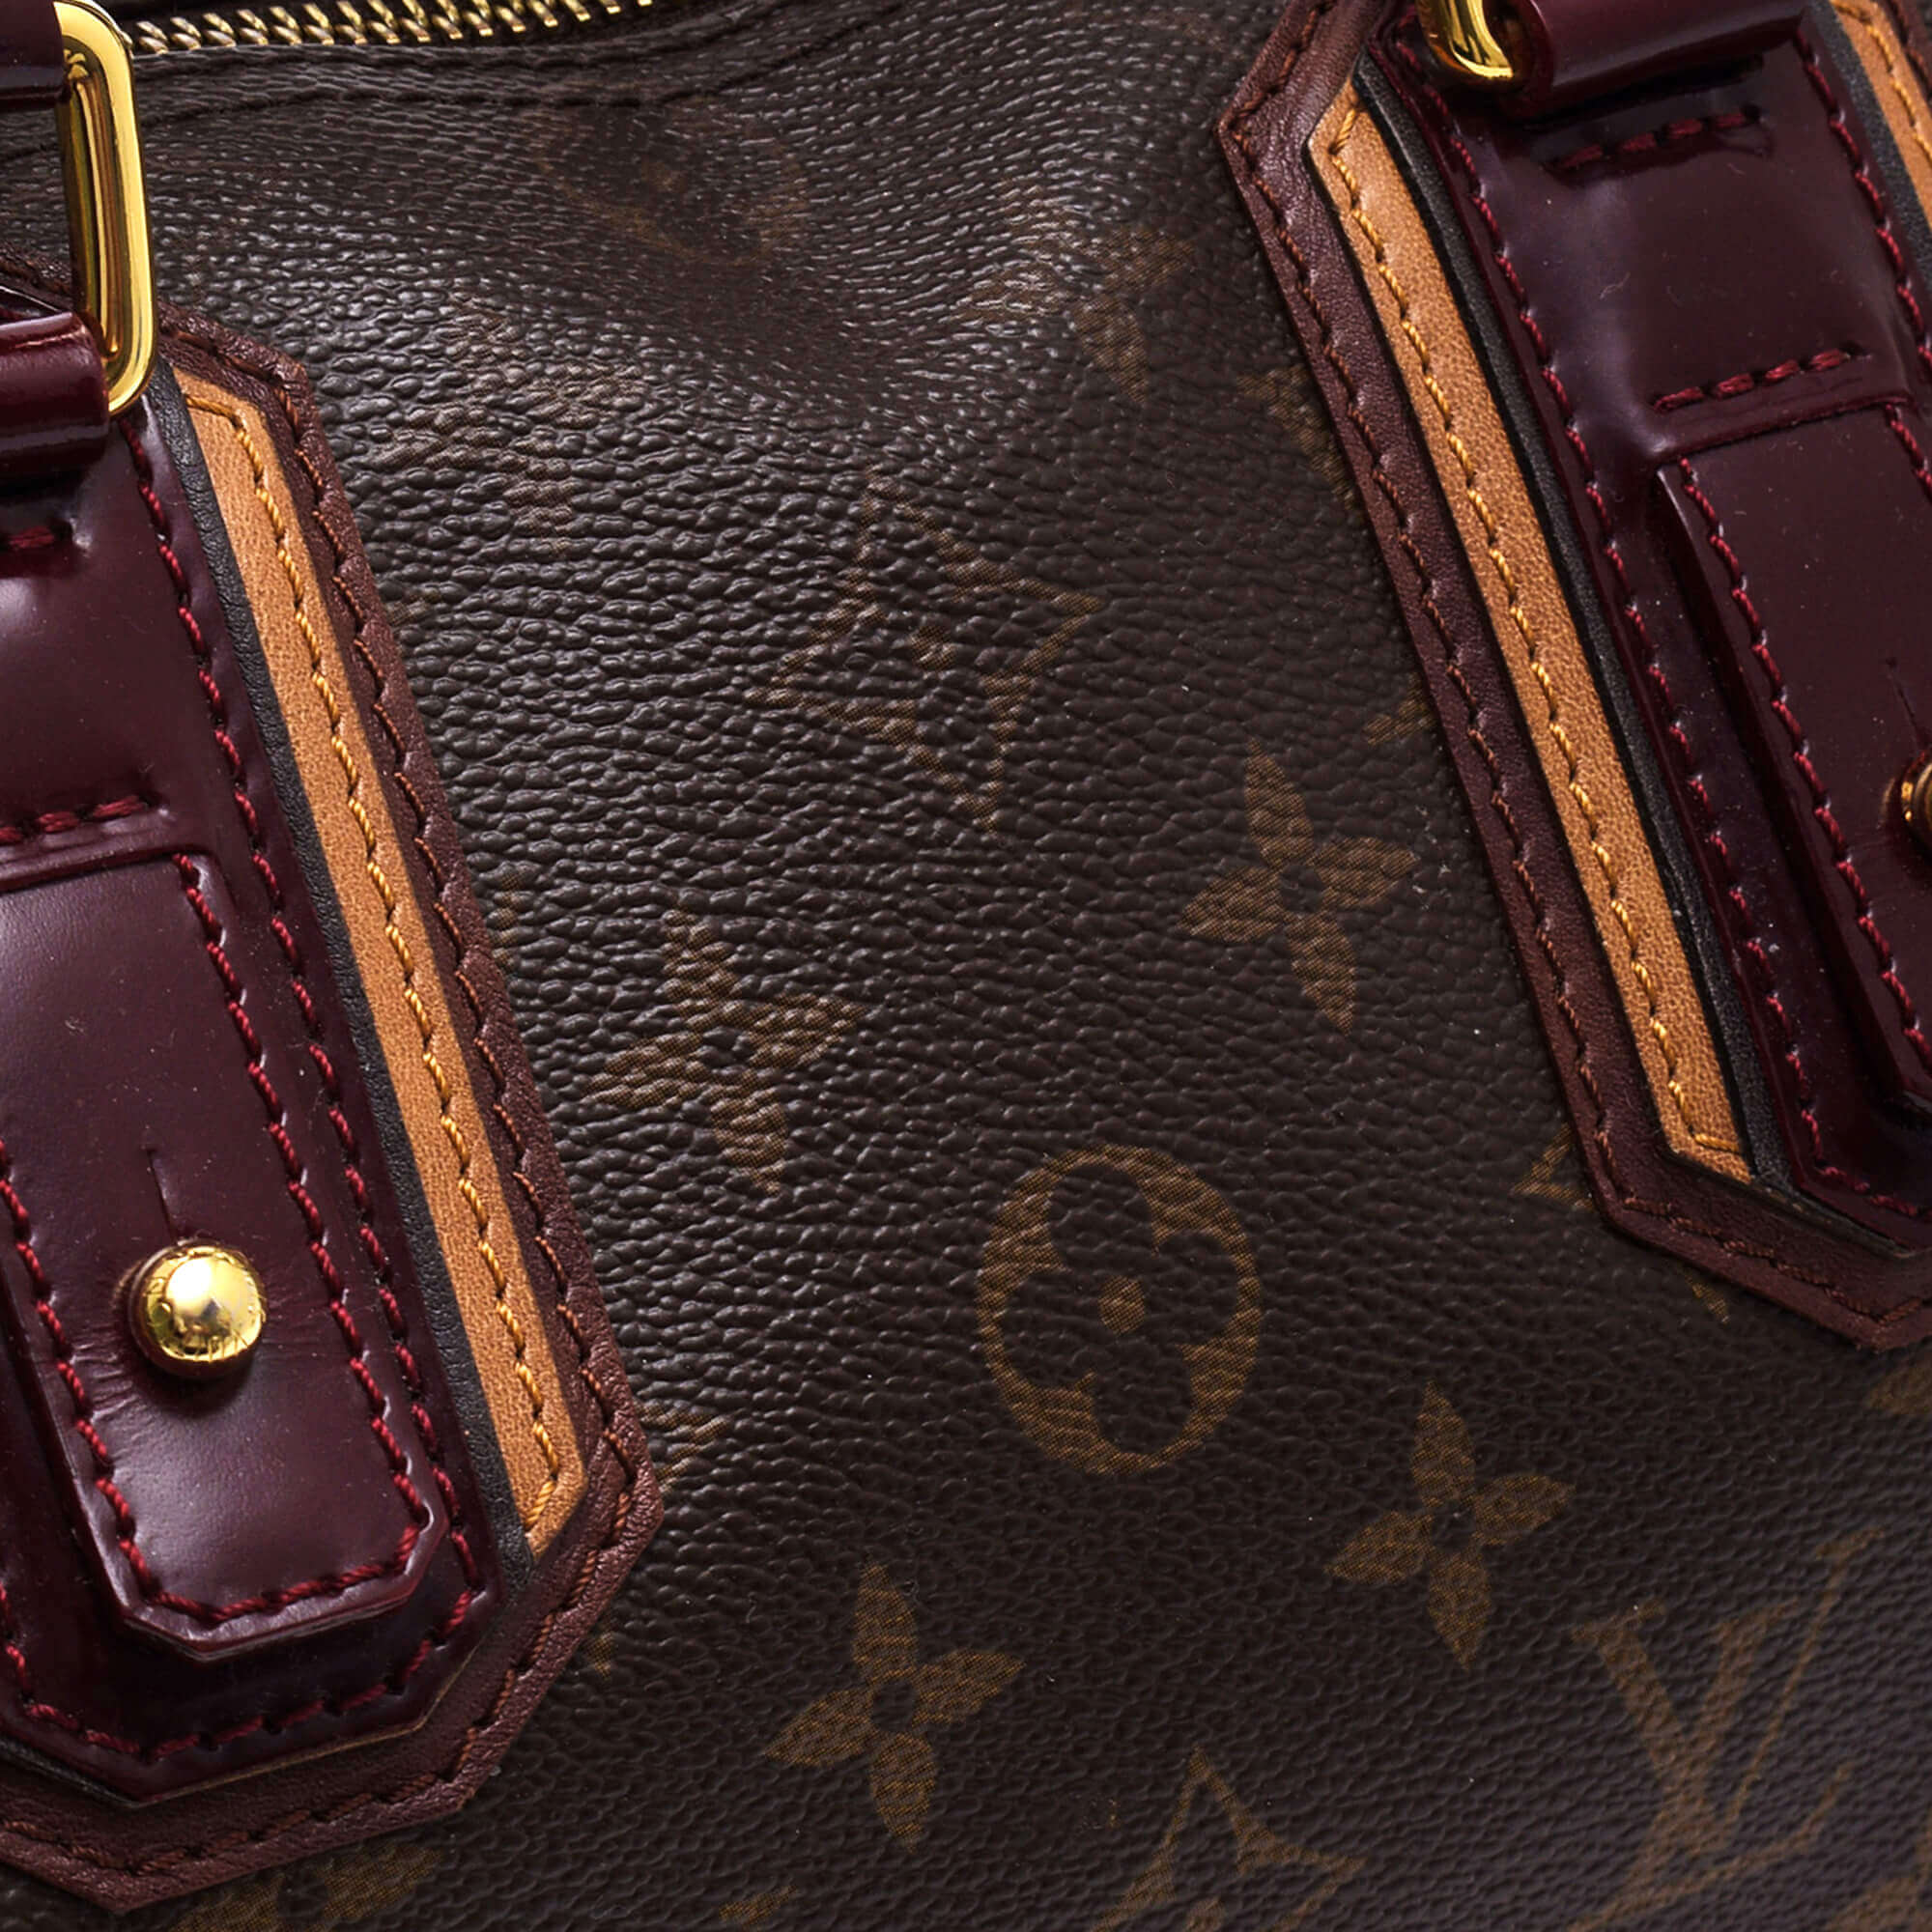 Louis Vuitton - Bordeaux Leather & Monogram Canvas Mirage Limited Edition Speedy 30 Bag